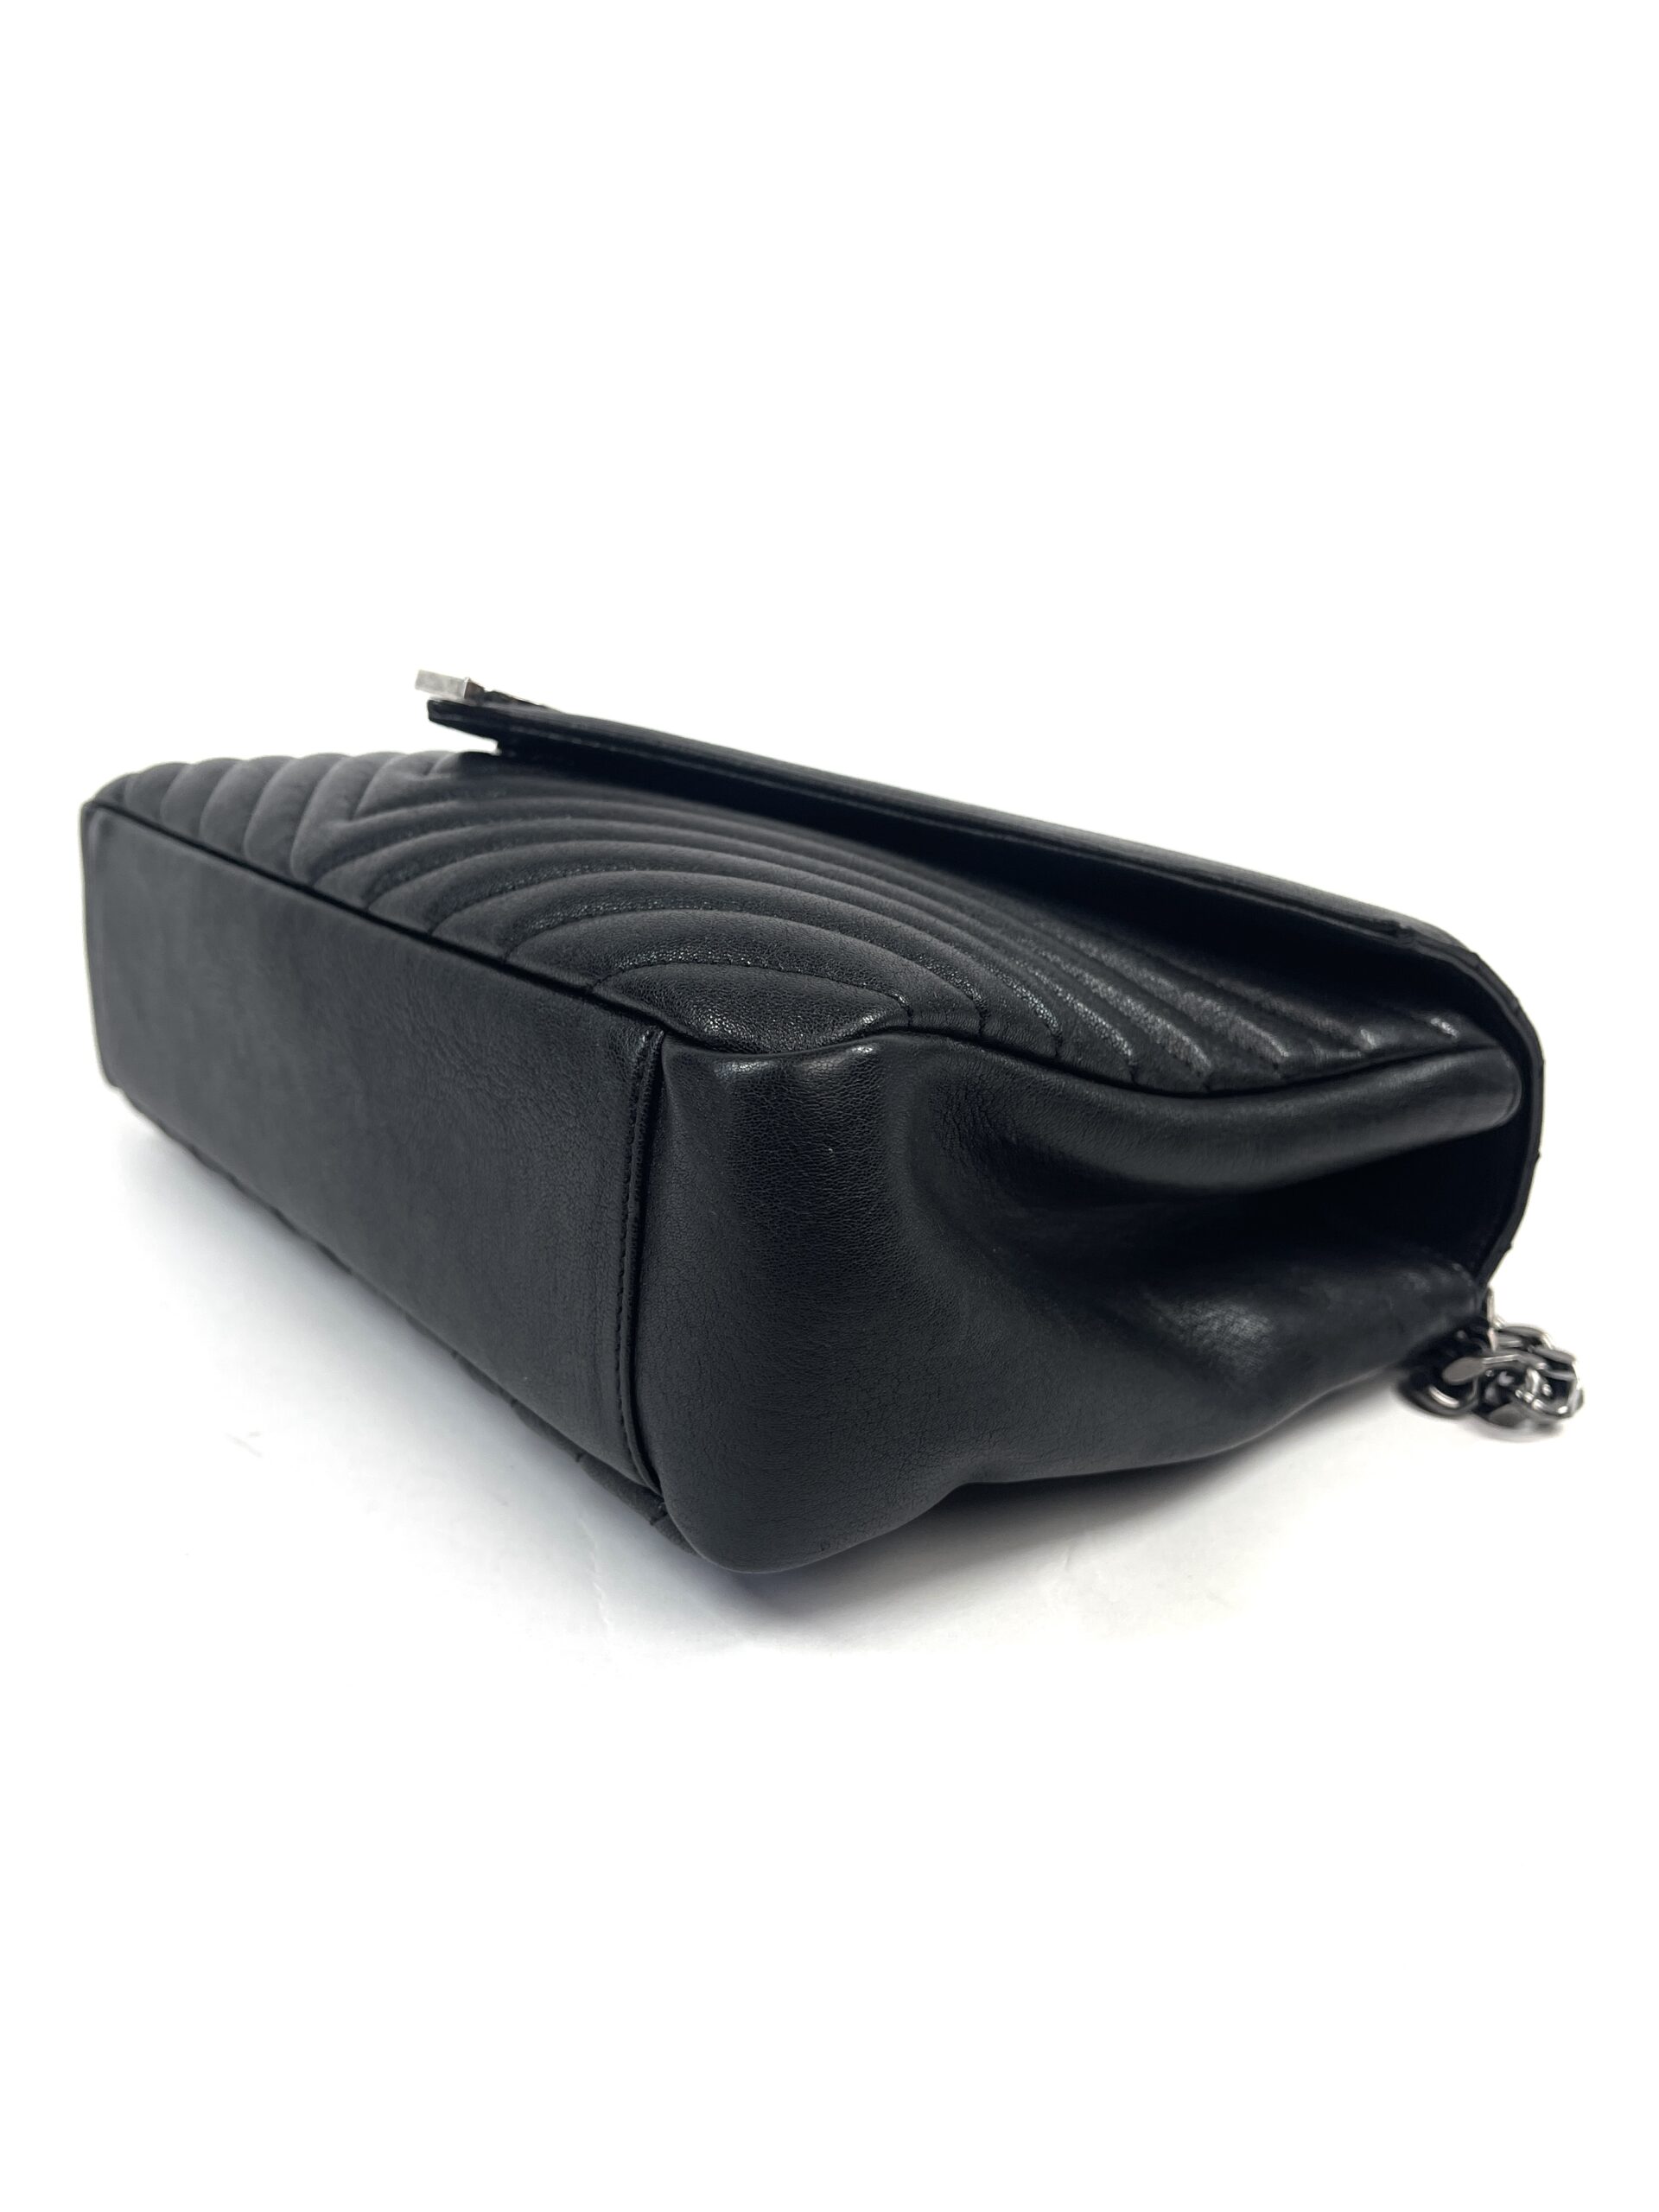 YSL Black College Large Quilted Leather V-Flap Shoulder Bag - A